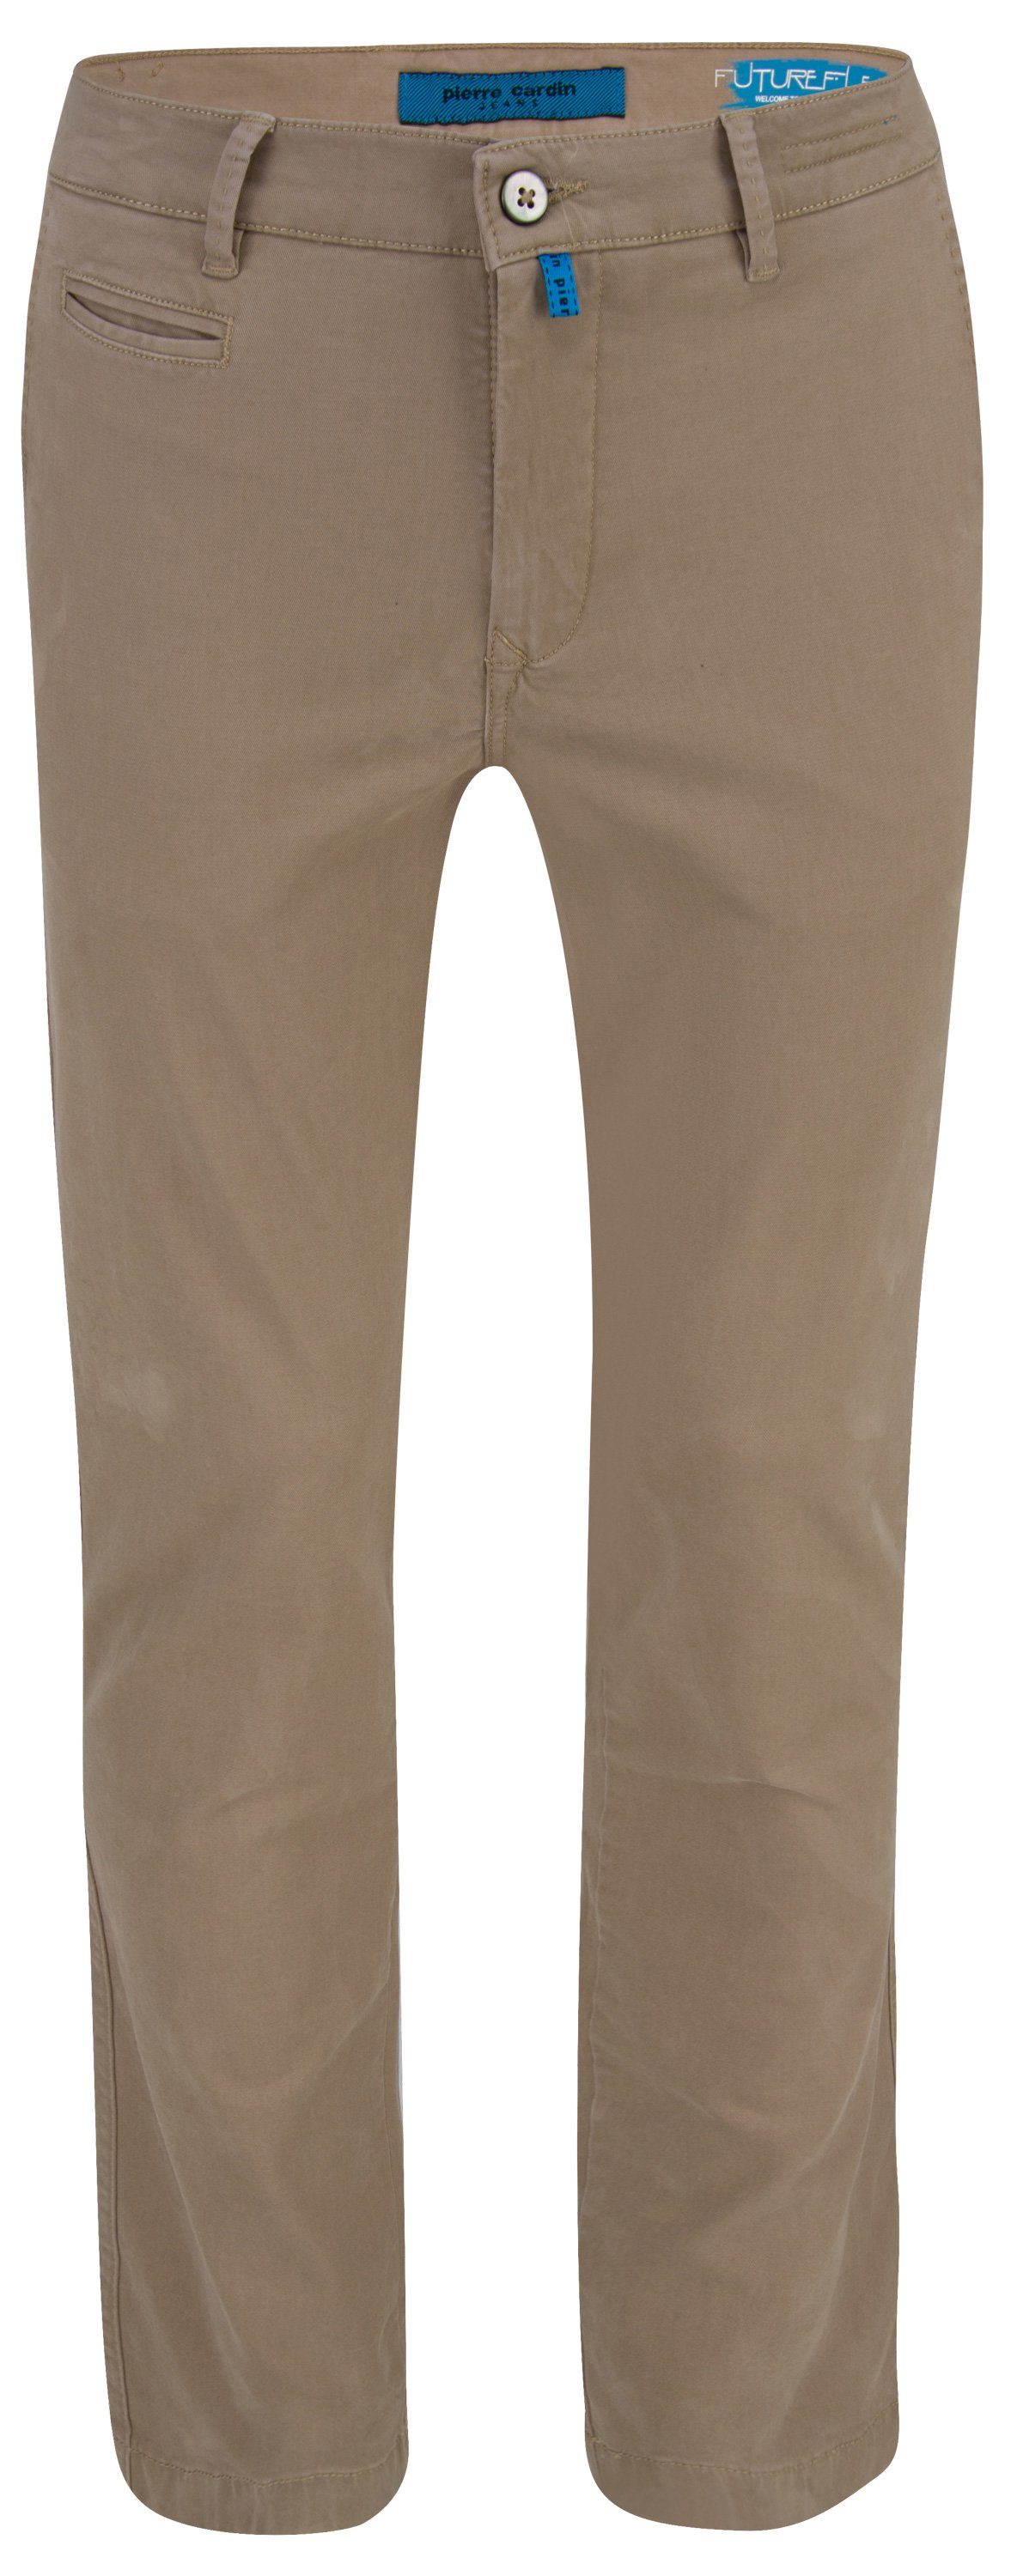 Pierre Cardin 5-Pocket-Jeans PIERRE CARDIN FUTUREFLEX LYON beige 33757 2233.25